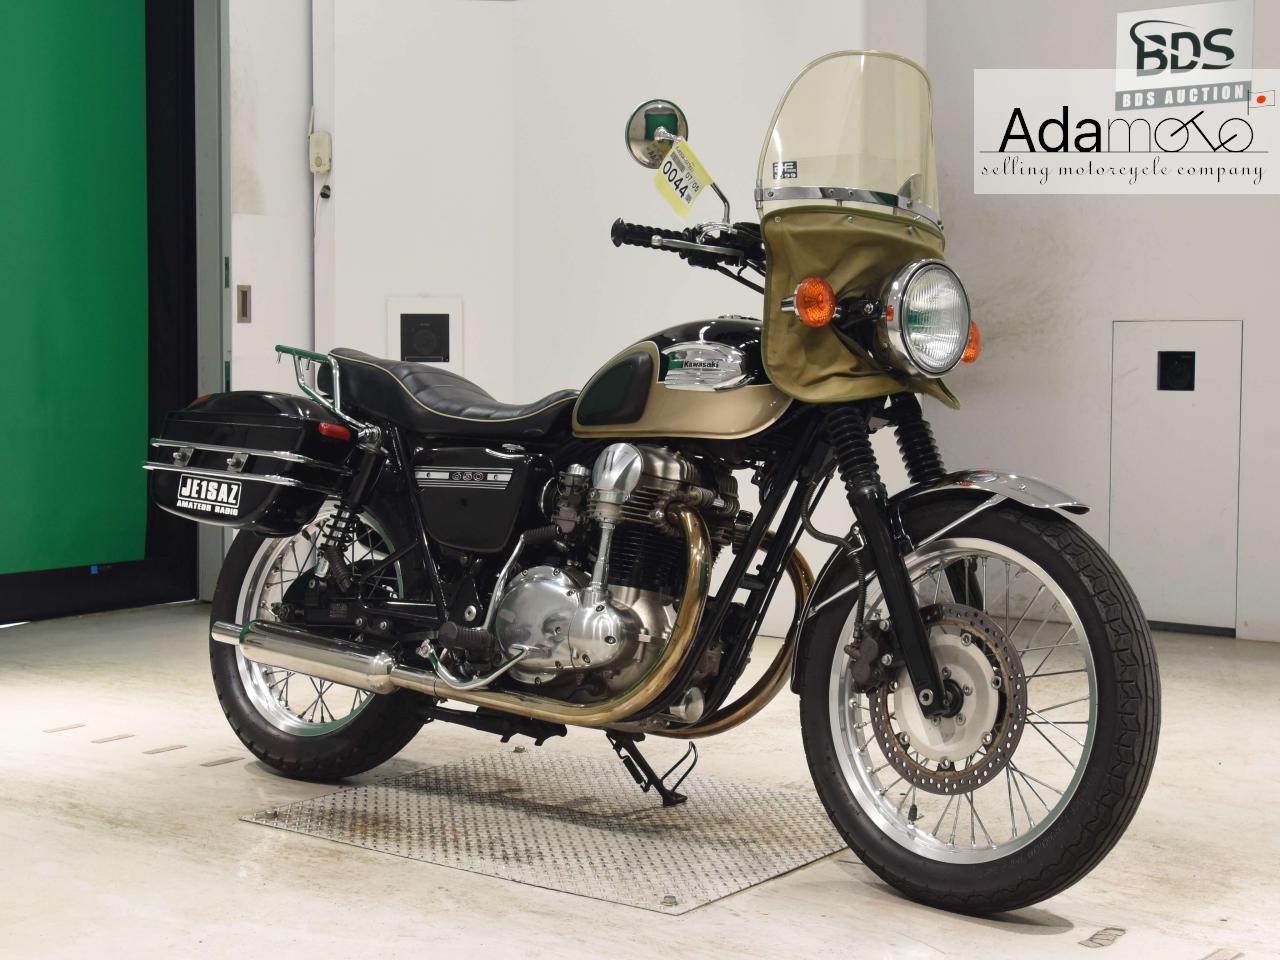 Kawasaki W650 - Adamoto - Motorcycles from Japan